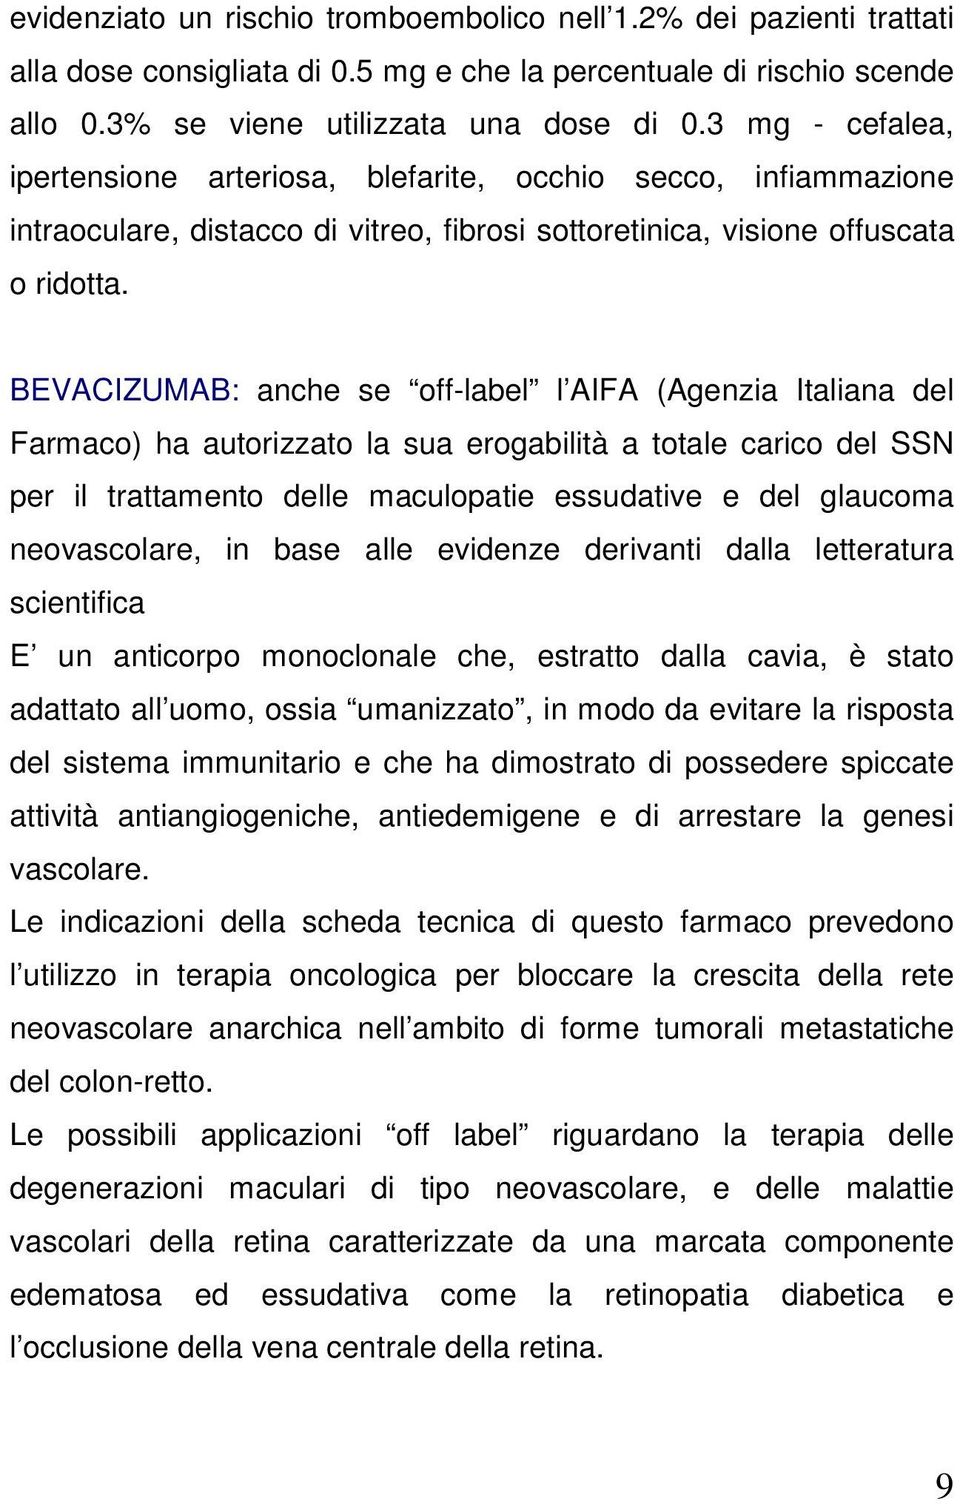 BEVACIZUMAB: anche se off-label l AIFA (Agenzia Italiana del Farmaco) ha autorizzato la sua erogabilità a totale carico del SSN per il trattamento delle maculopatie essudative e del glaucoma